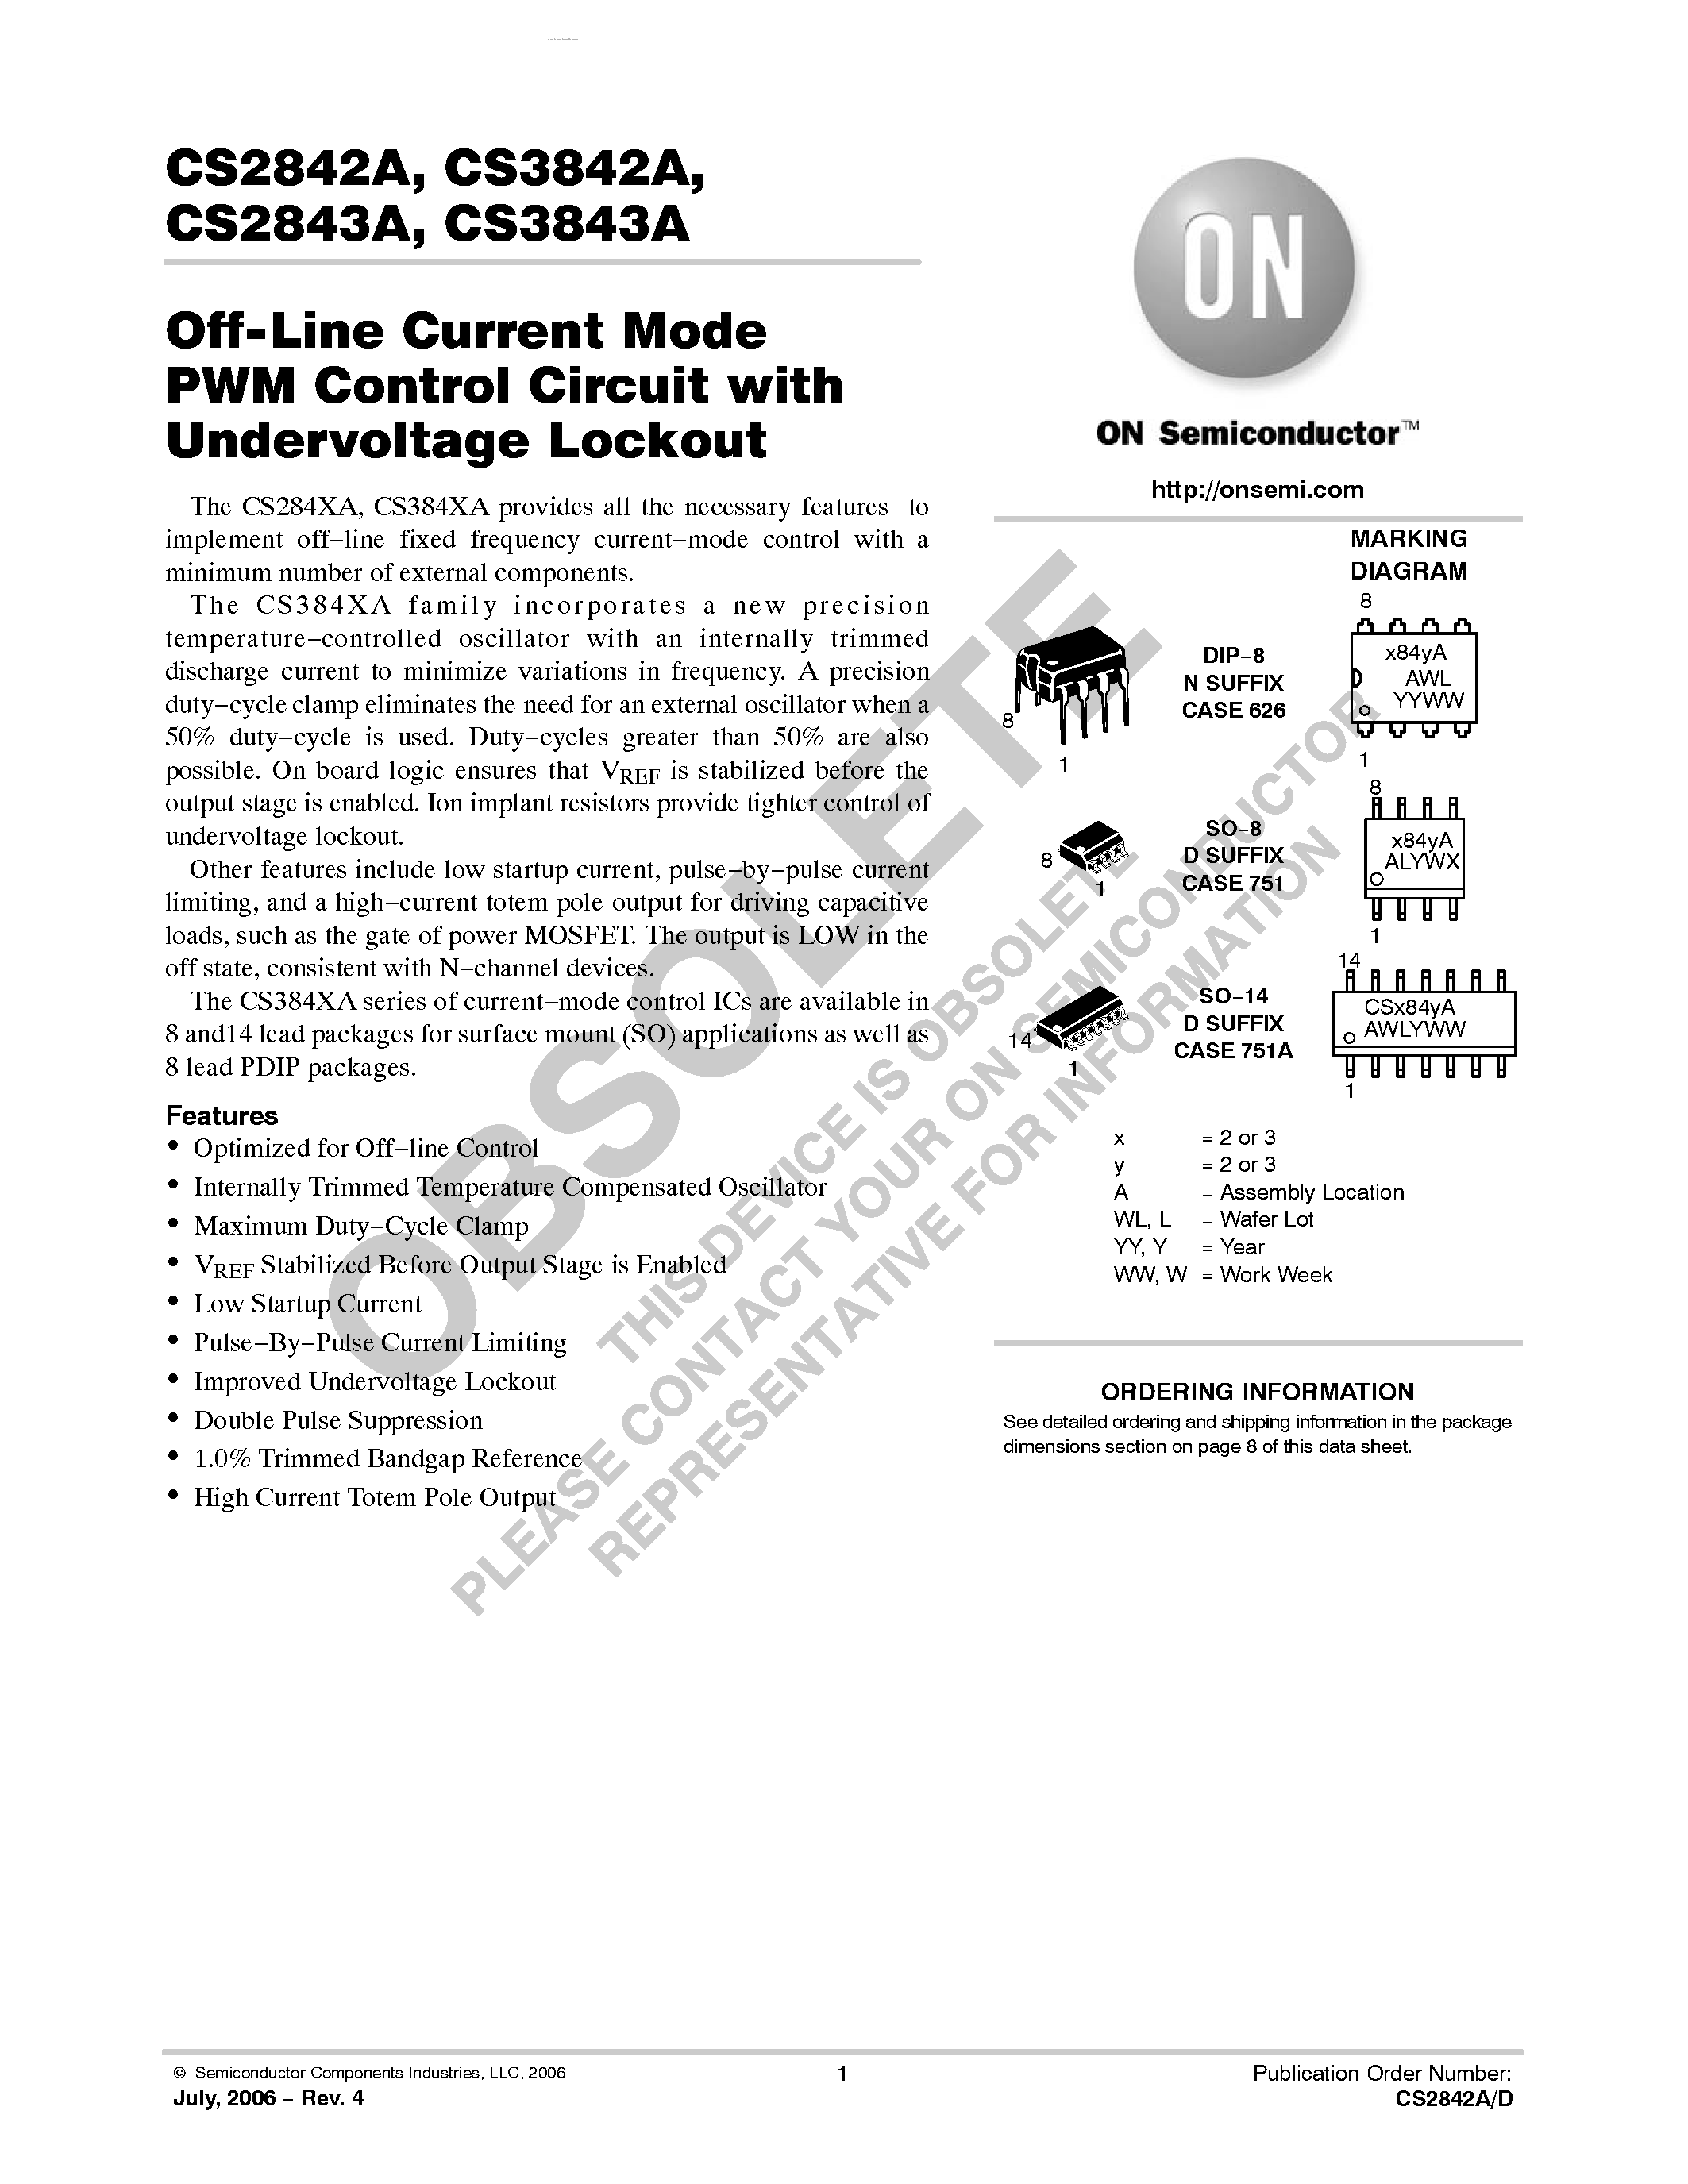 Даташит CS2842A - (CS2842A / CS2843A) Off-Line Current Mode PWM Control Circuit страница 1